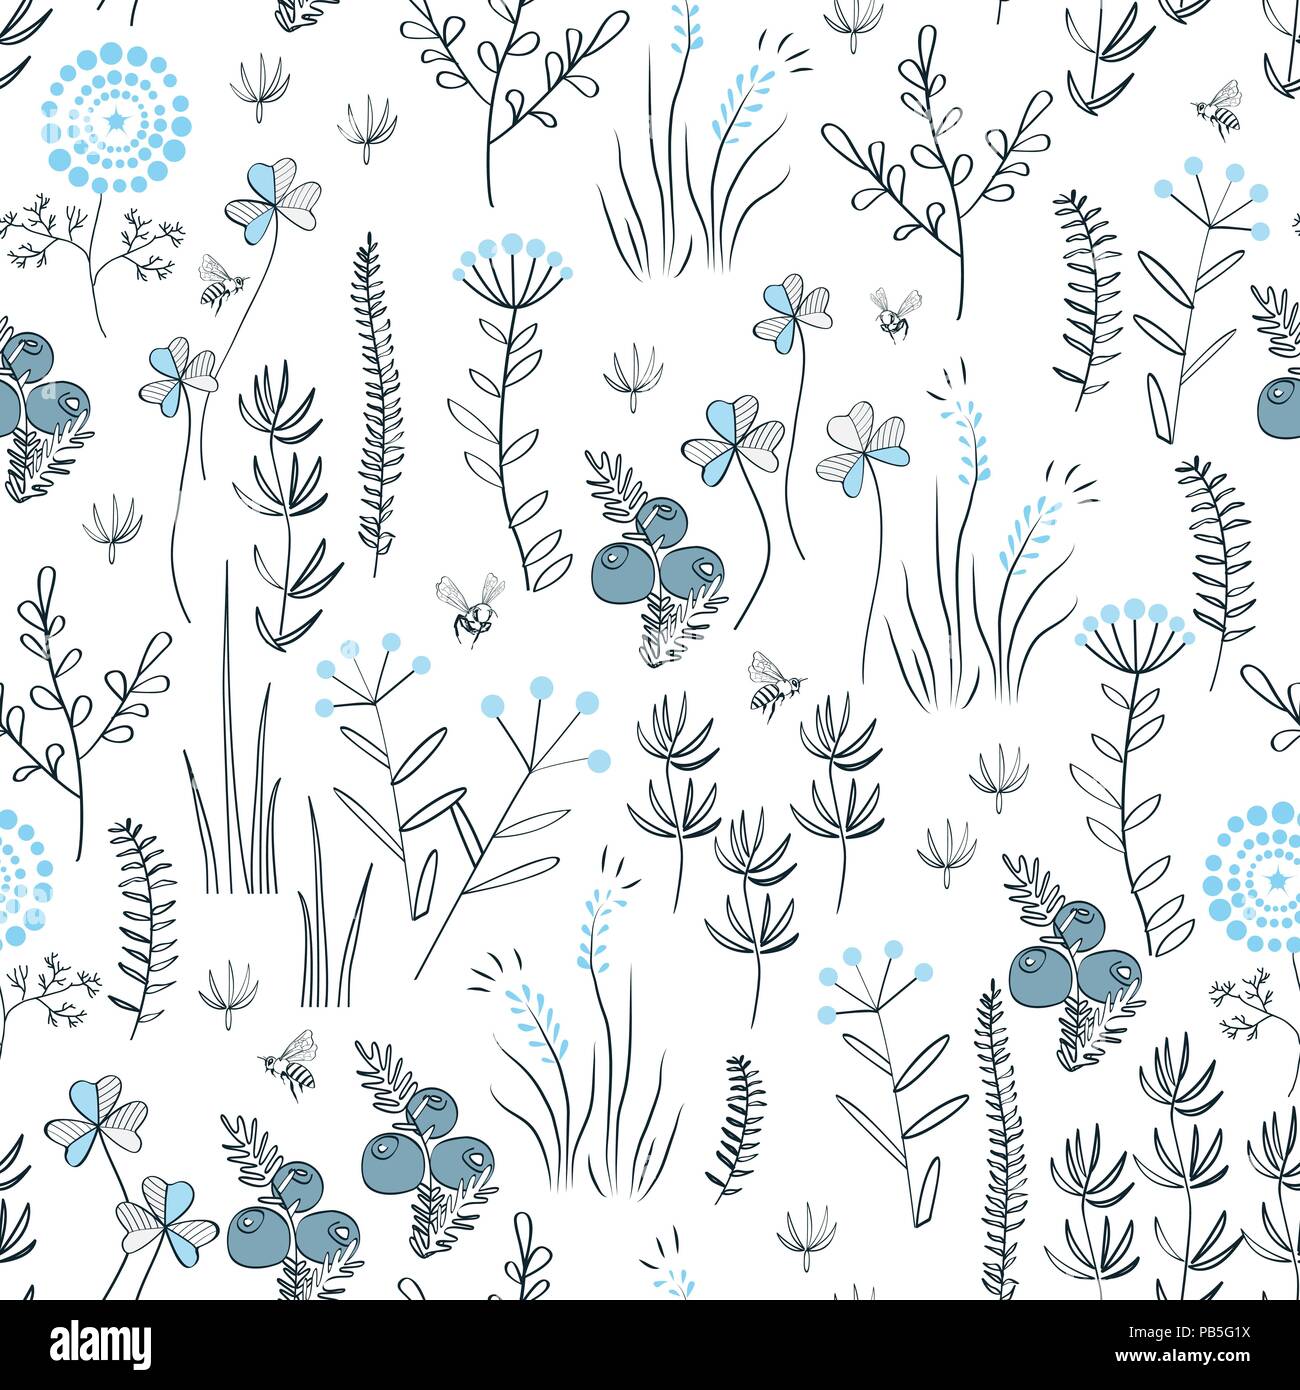 Florale Vektor nahtlose Muster mit wilden Kräutern, Wald, Blumen und Blätter. Vintage botanischen Hintergrund. Hand natürliche Wiese gezogen Stock Vektor